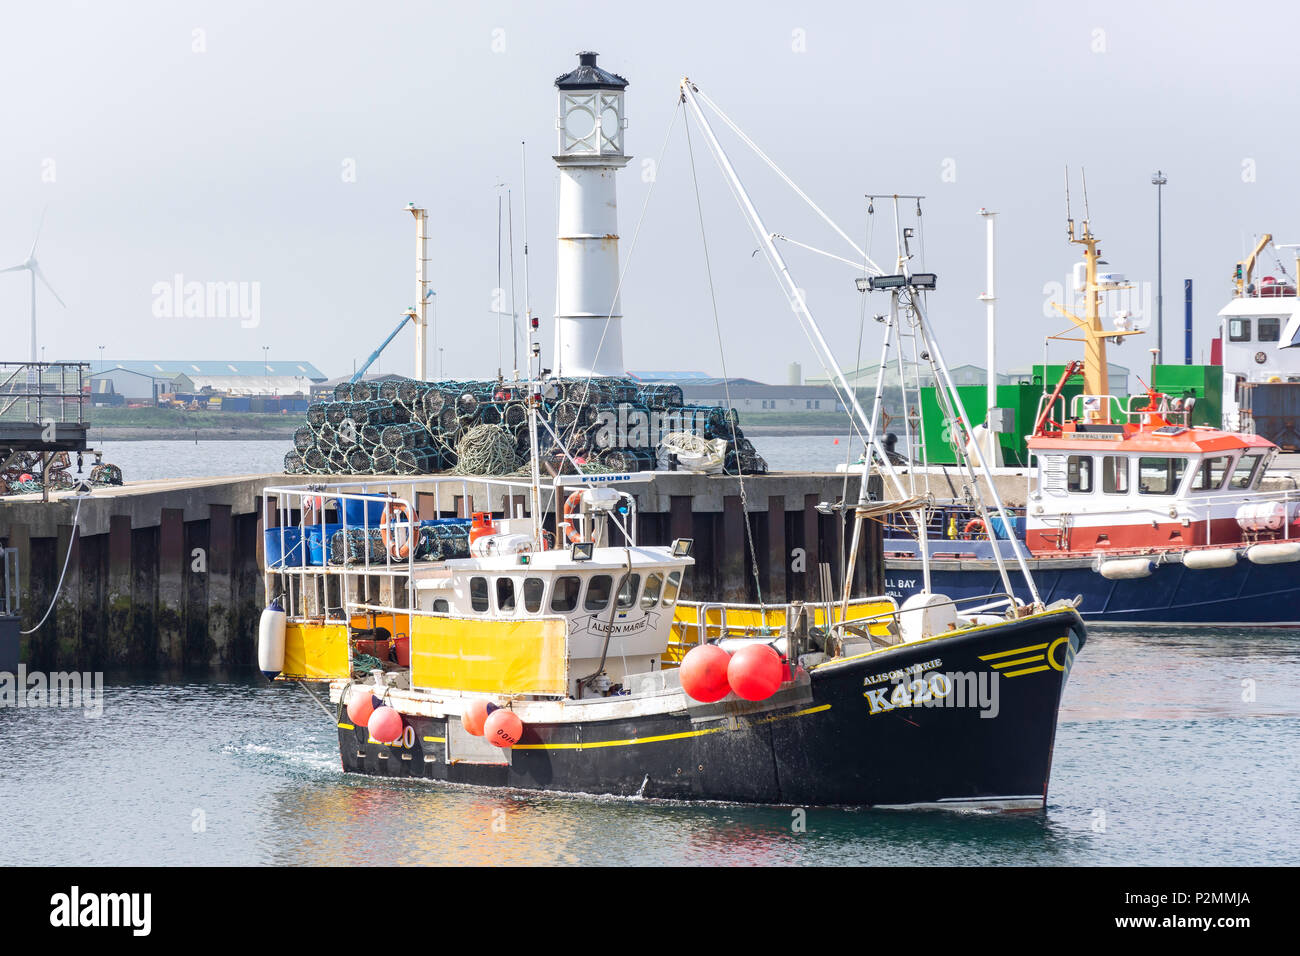 Angeln Boot, Hafen, Kirkwall, Orkney Inseln, Festland, Nördliche Inseln, Schottland, Vereinigtes Königreich Stockfoto